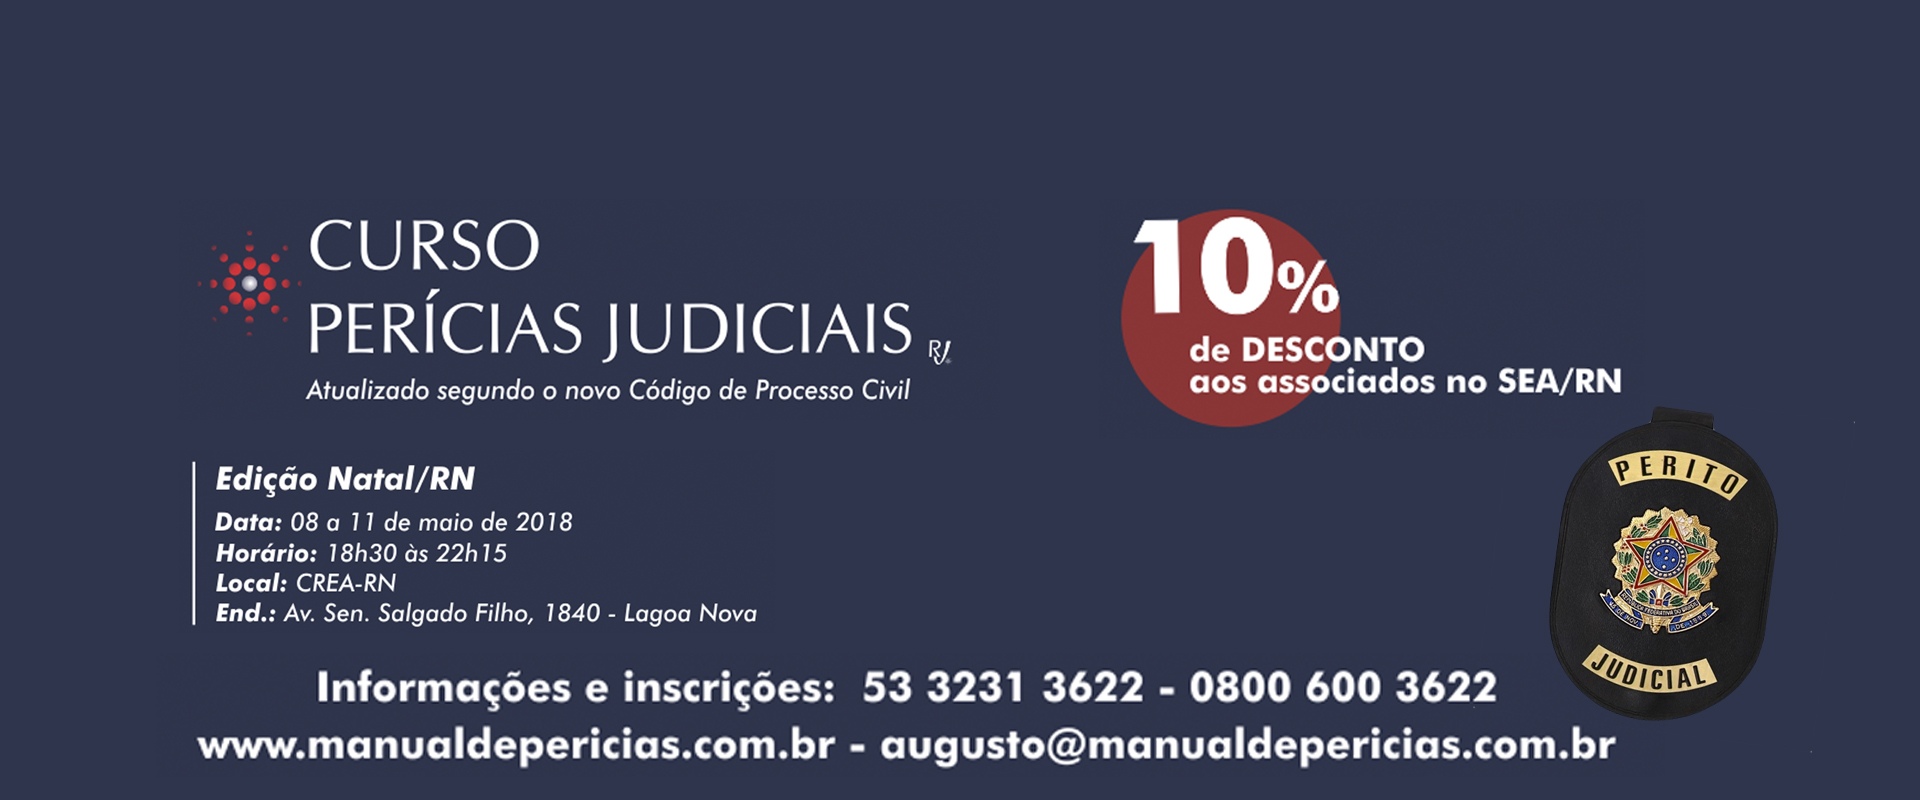 CURSO DE PERÍCIAS JUDICIAIS